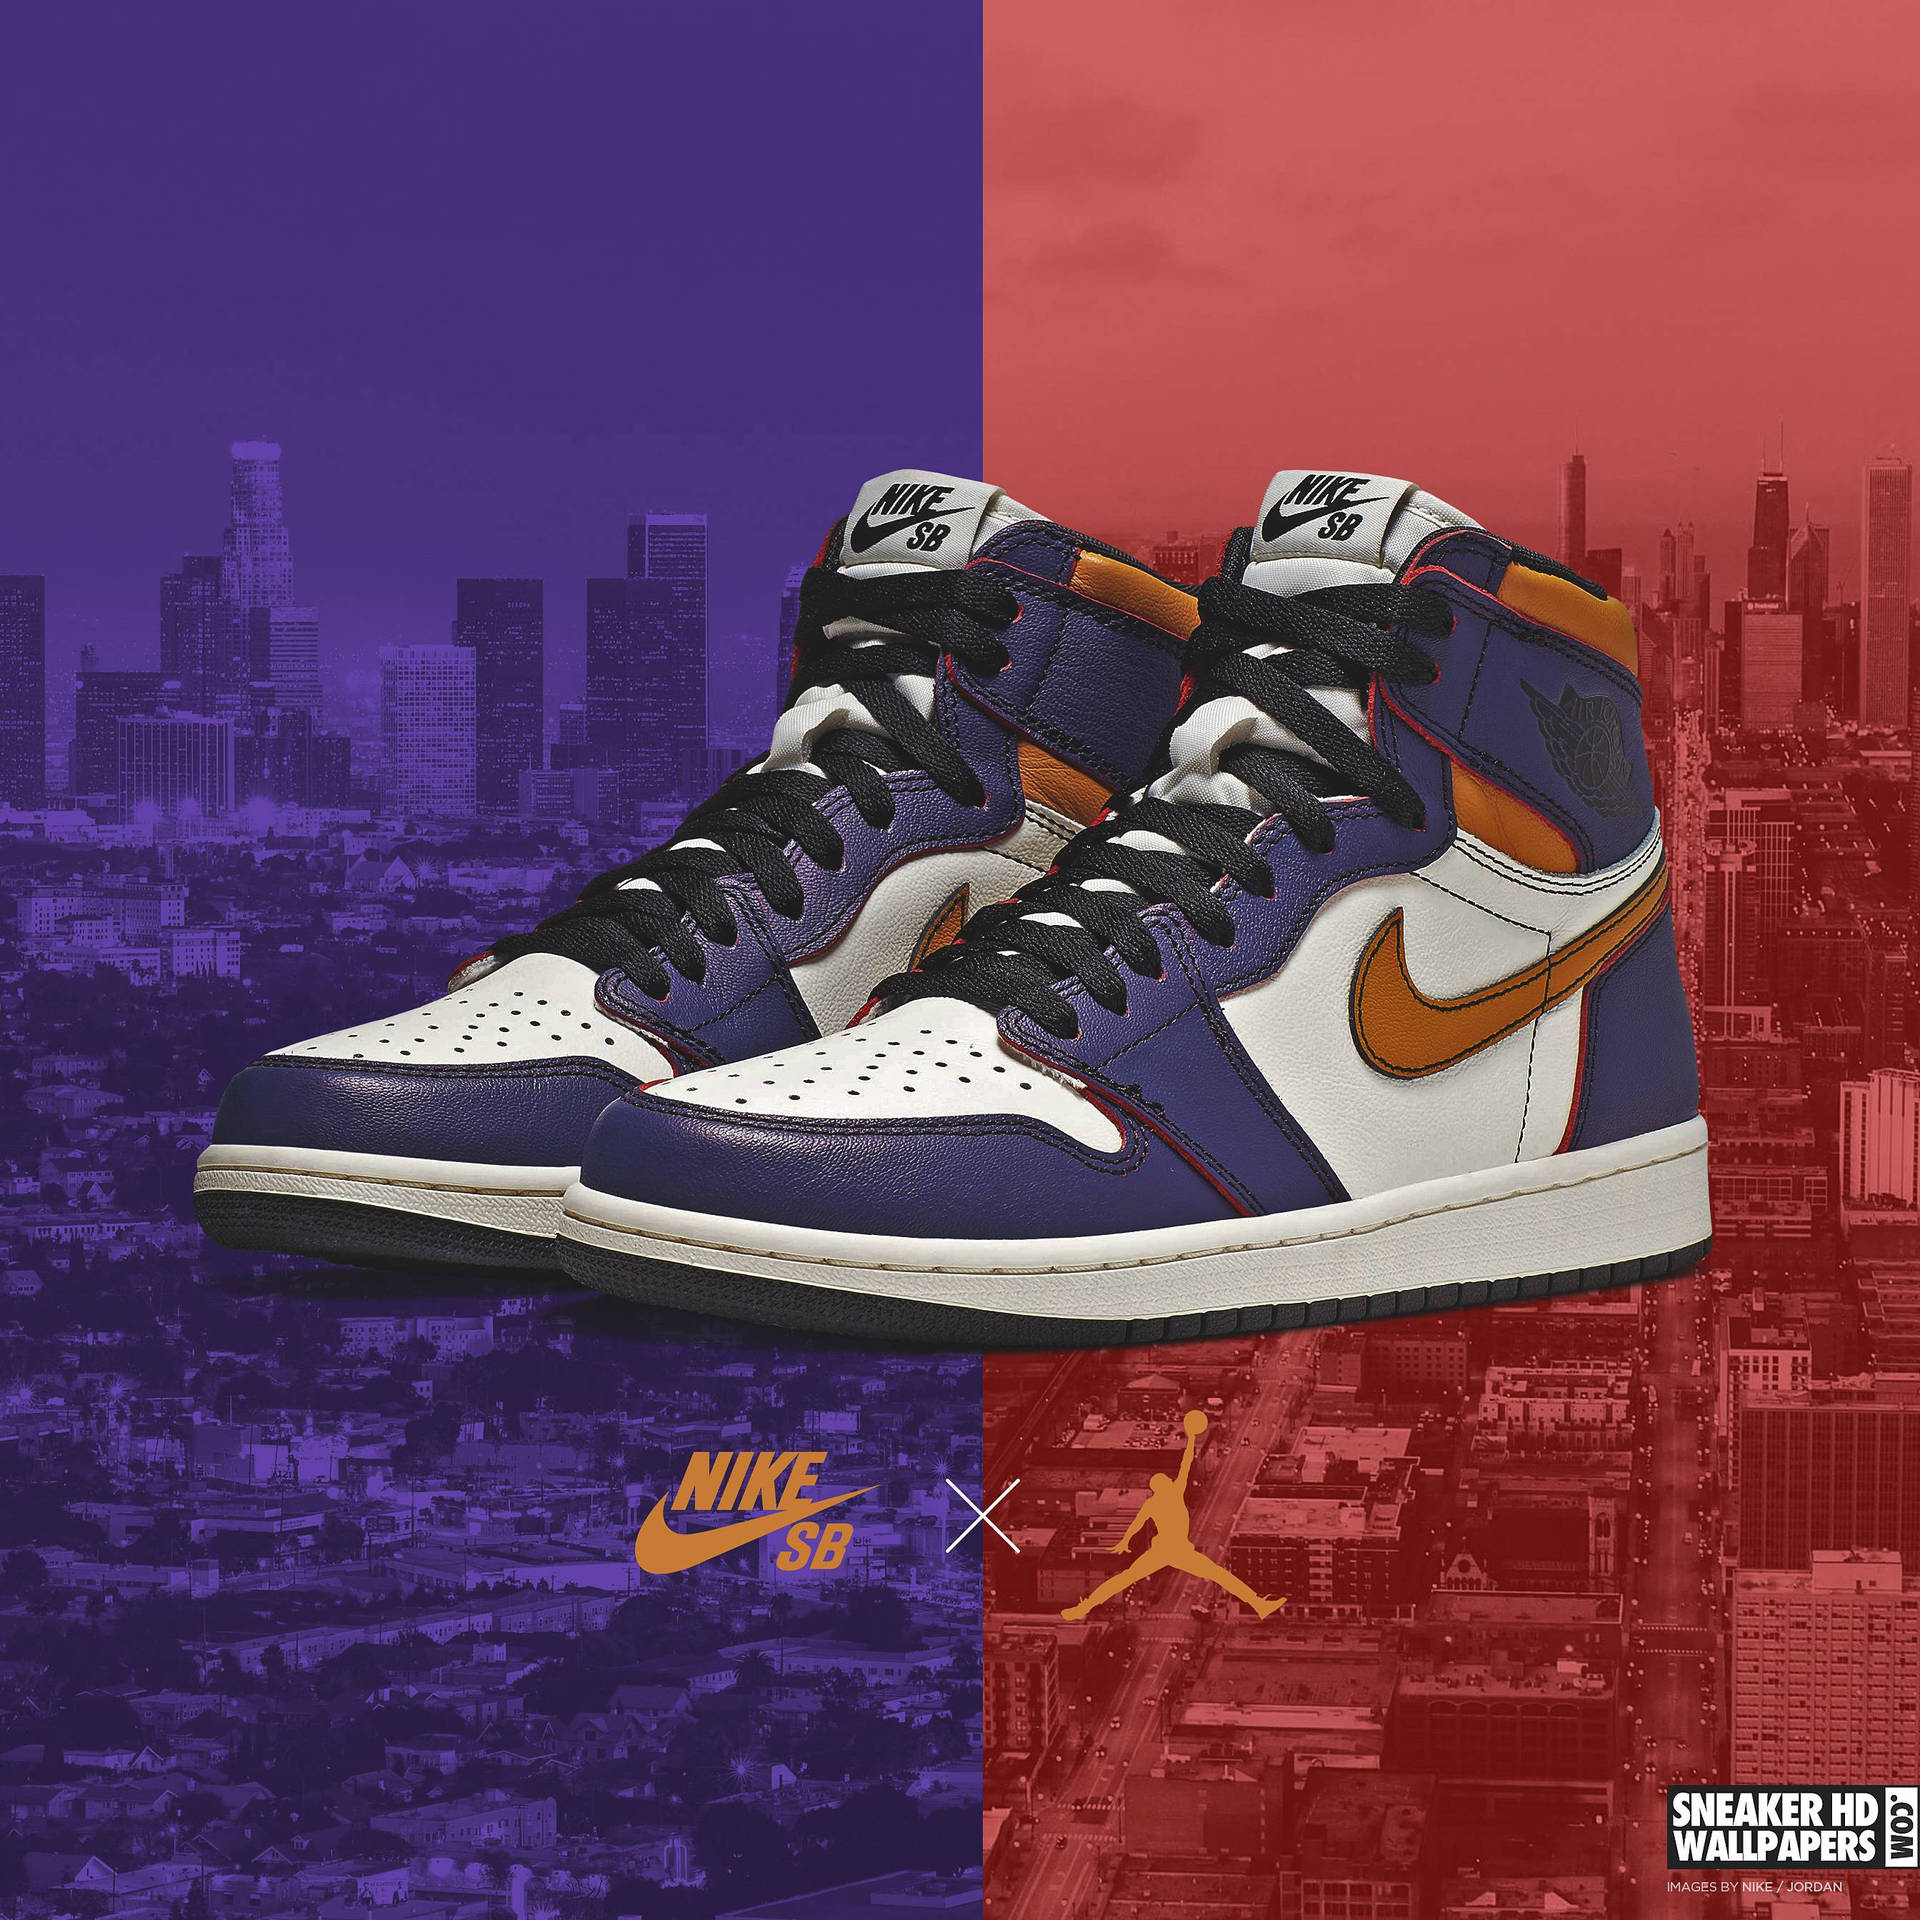 Air Jordan 1 Lakers Sb Sneaker Showcasing Classic Pop Culture Influence